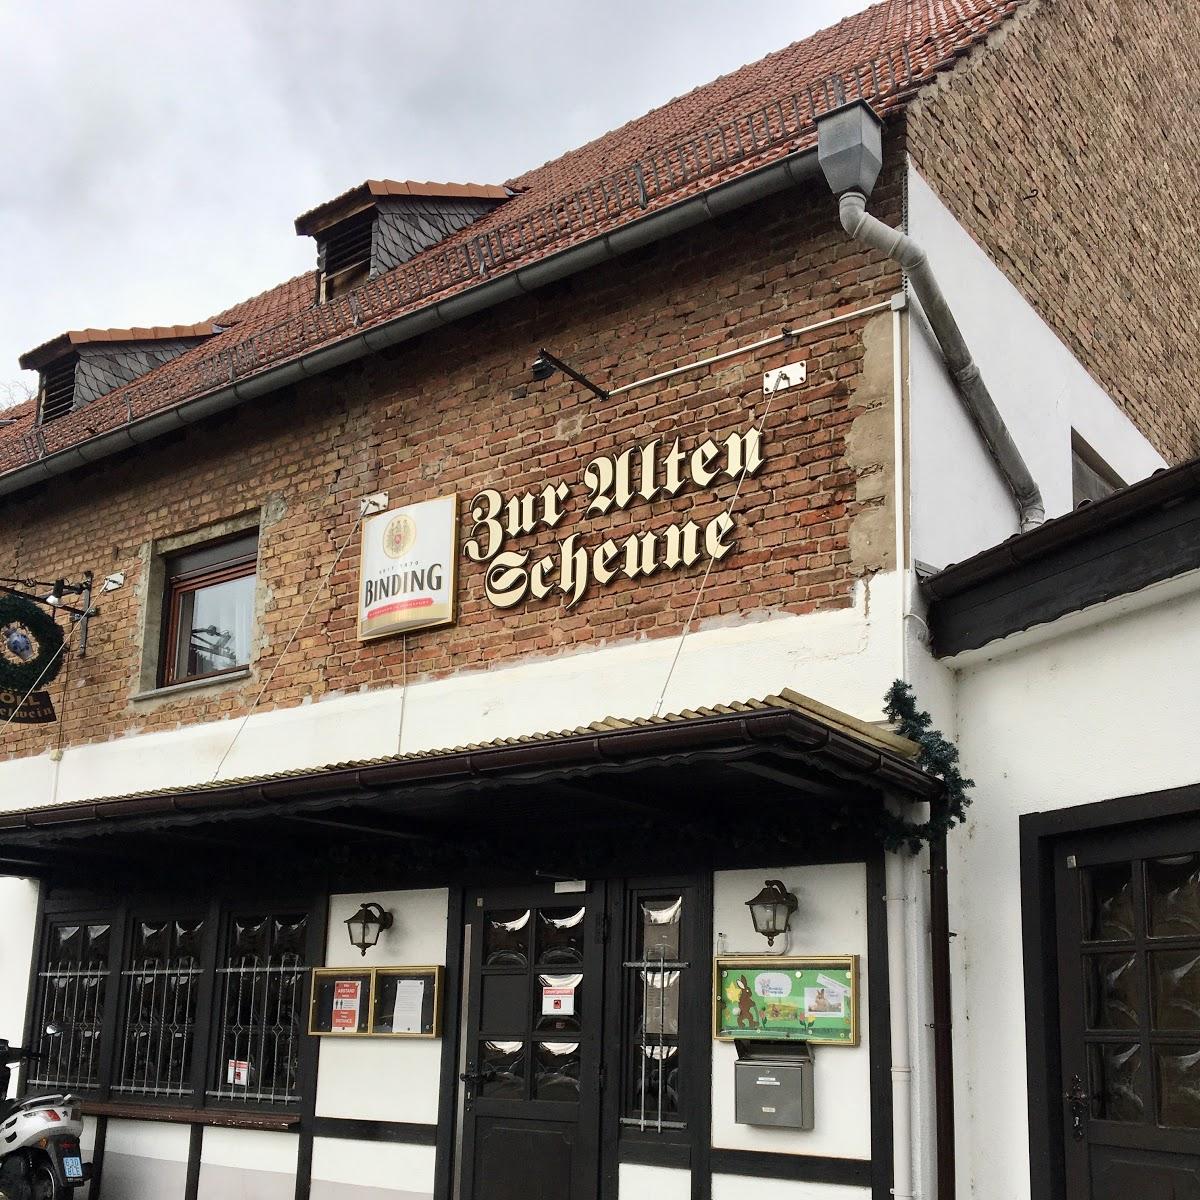 Restaurant "Alte Scheune" in Frankfurt am Main